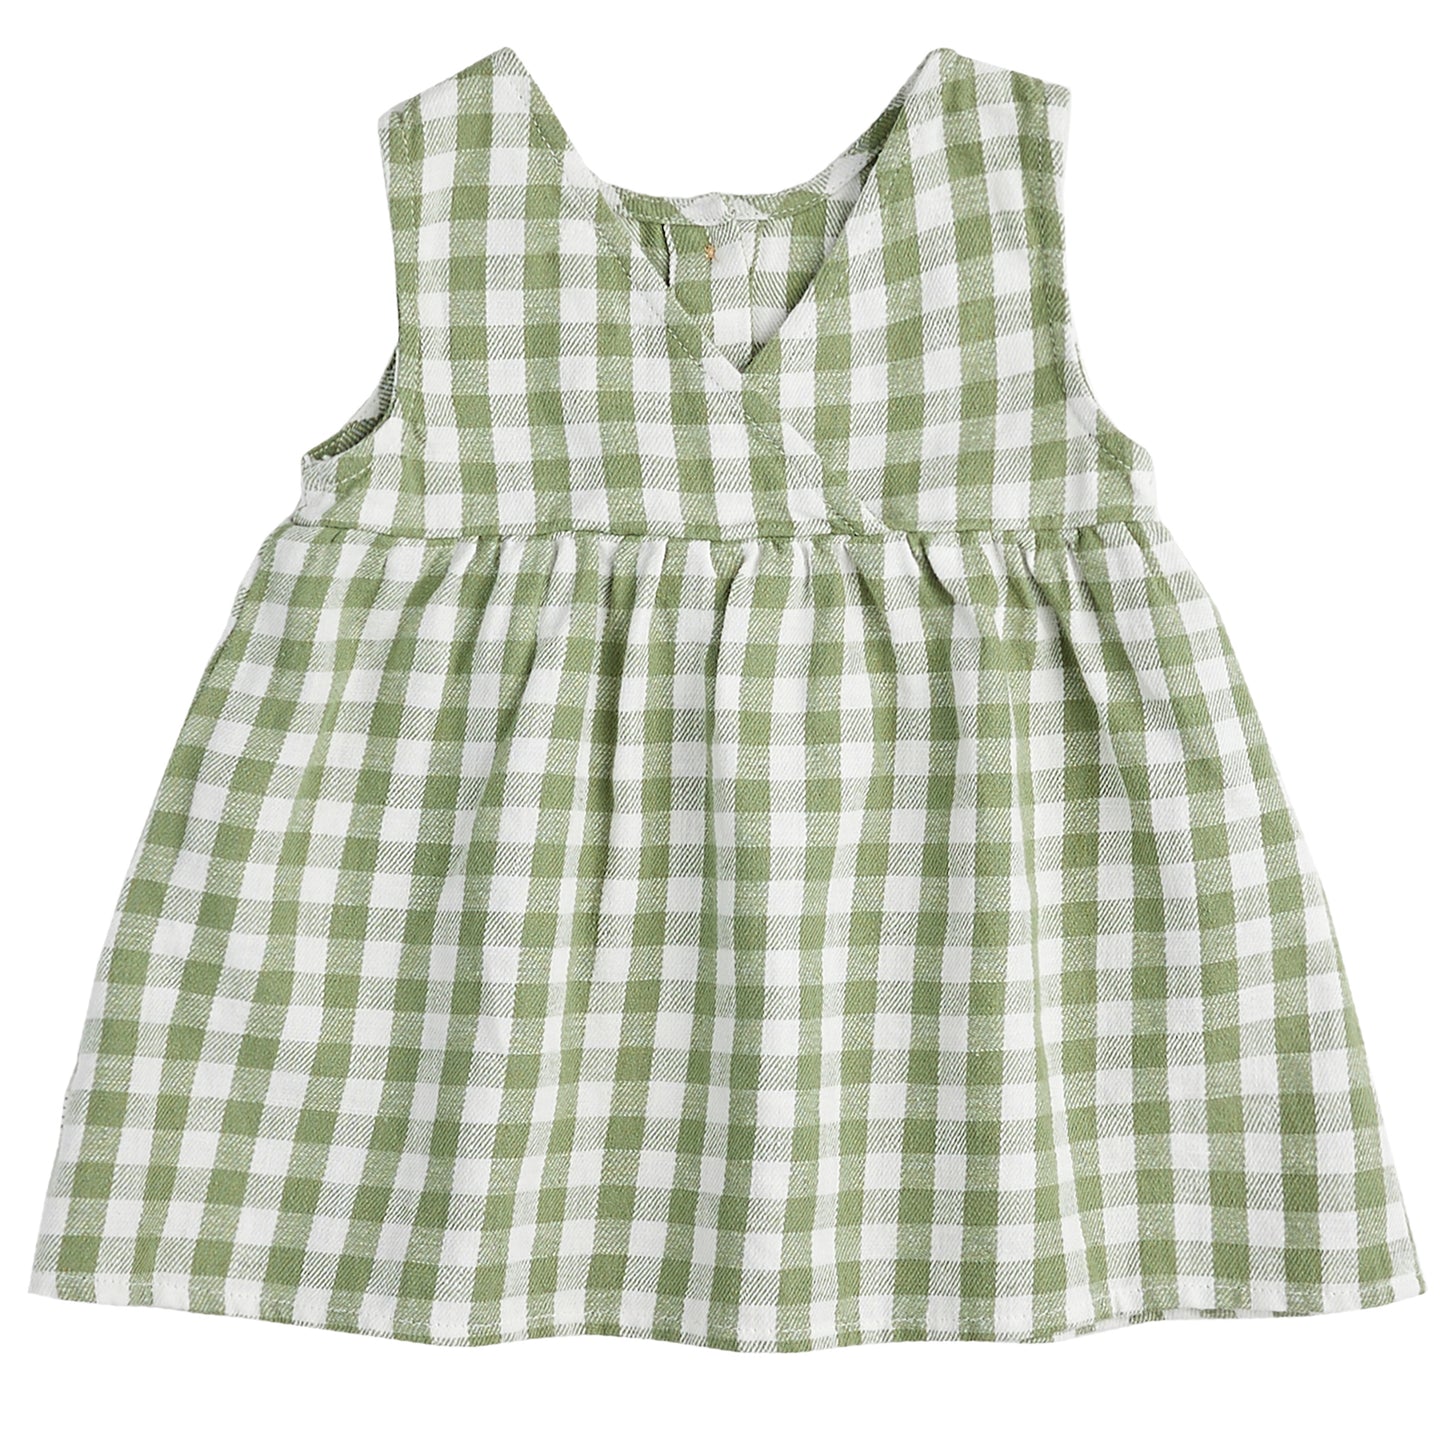 Baby 2Pc Set:Sleeveless Dress Top + Short Woven: Green